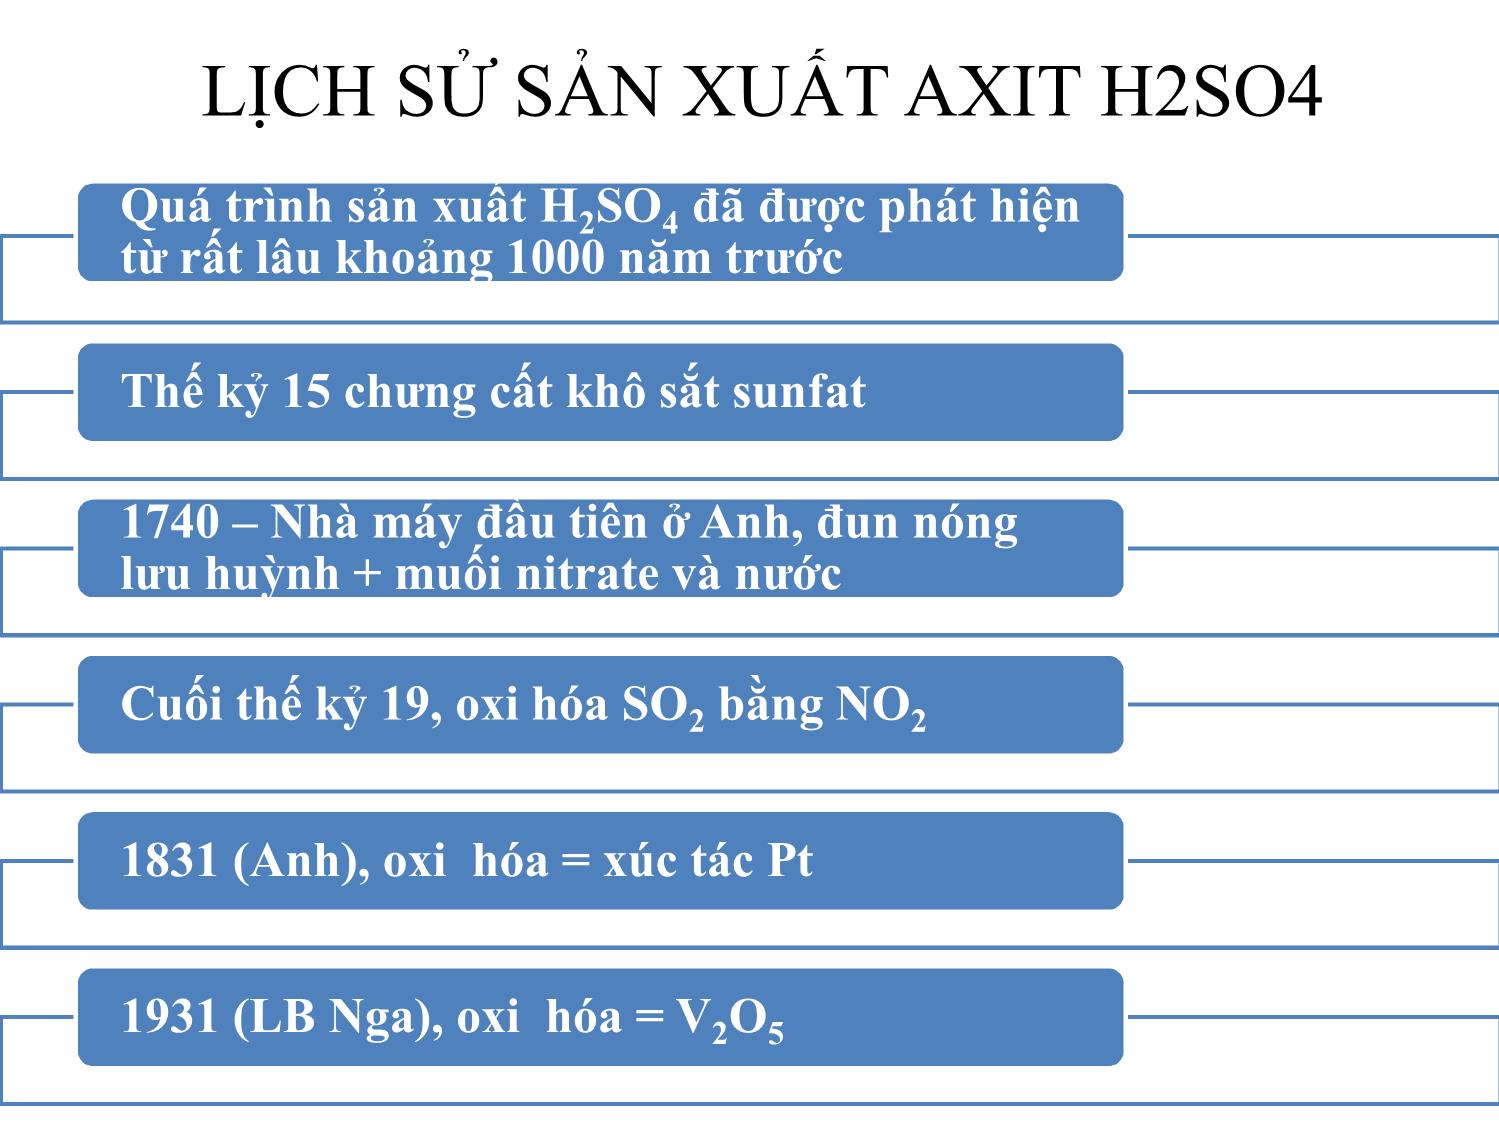 Bài giảng Lịch sử sản xuất axit h2so4 trang 1